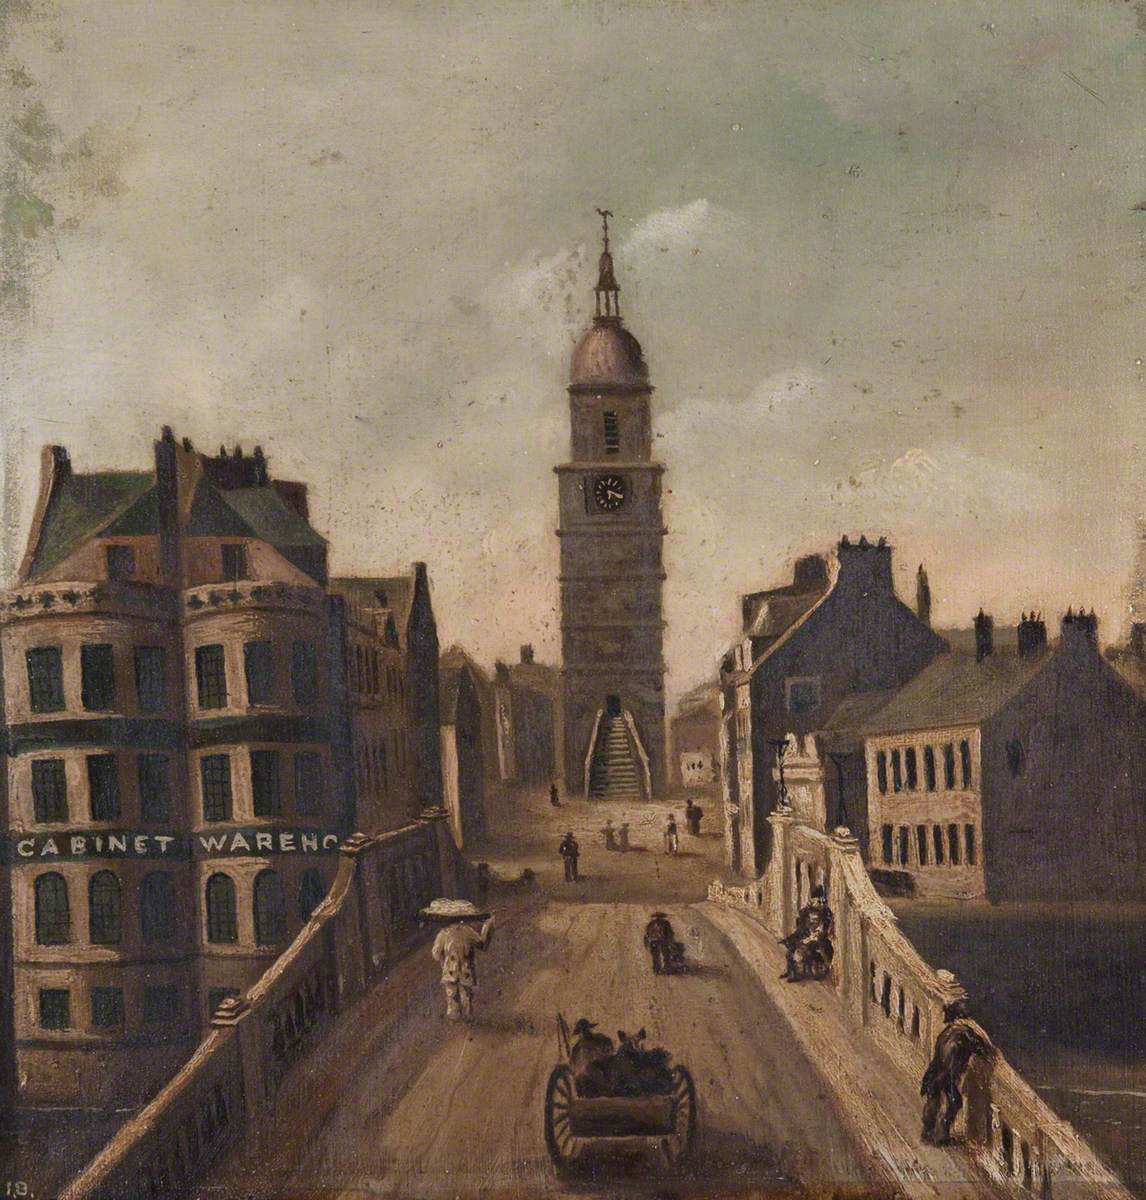 (Ayr) New Bridge & Town House, 1790